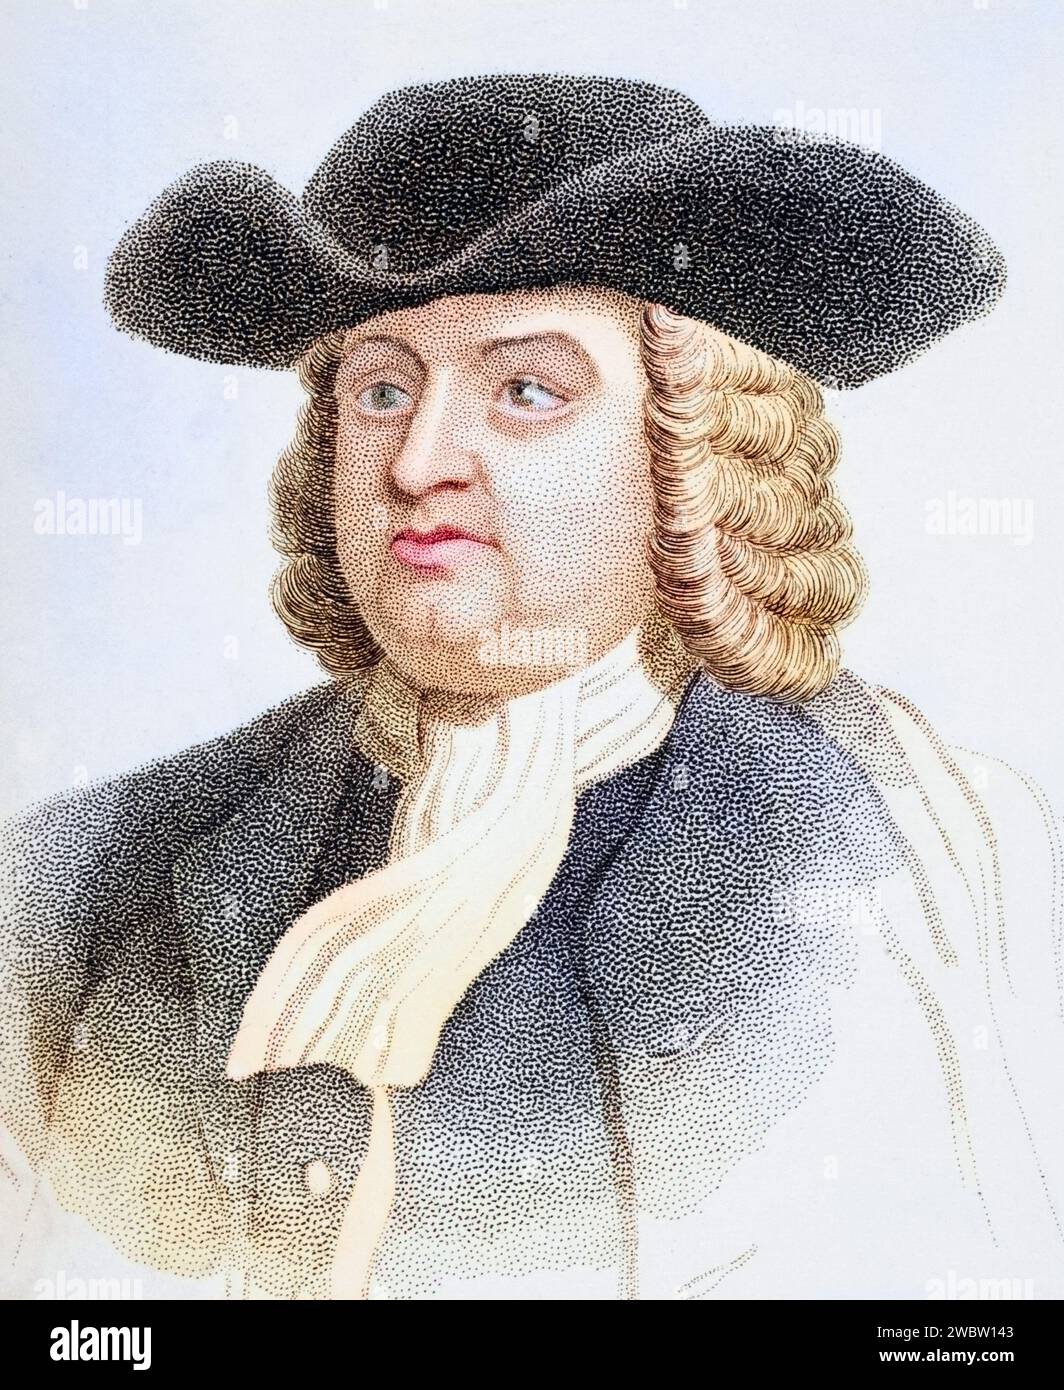 William Penn, 1644-1718, Englischer Quäkerführer, Illustration aus Old England's Worthies, erschienen um 1880, Historisch, digital restaurierte Reproduktion von einer Vorlage aus dem 19. Jahrhundert, data record non indicata Foto Stock